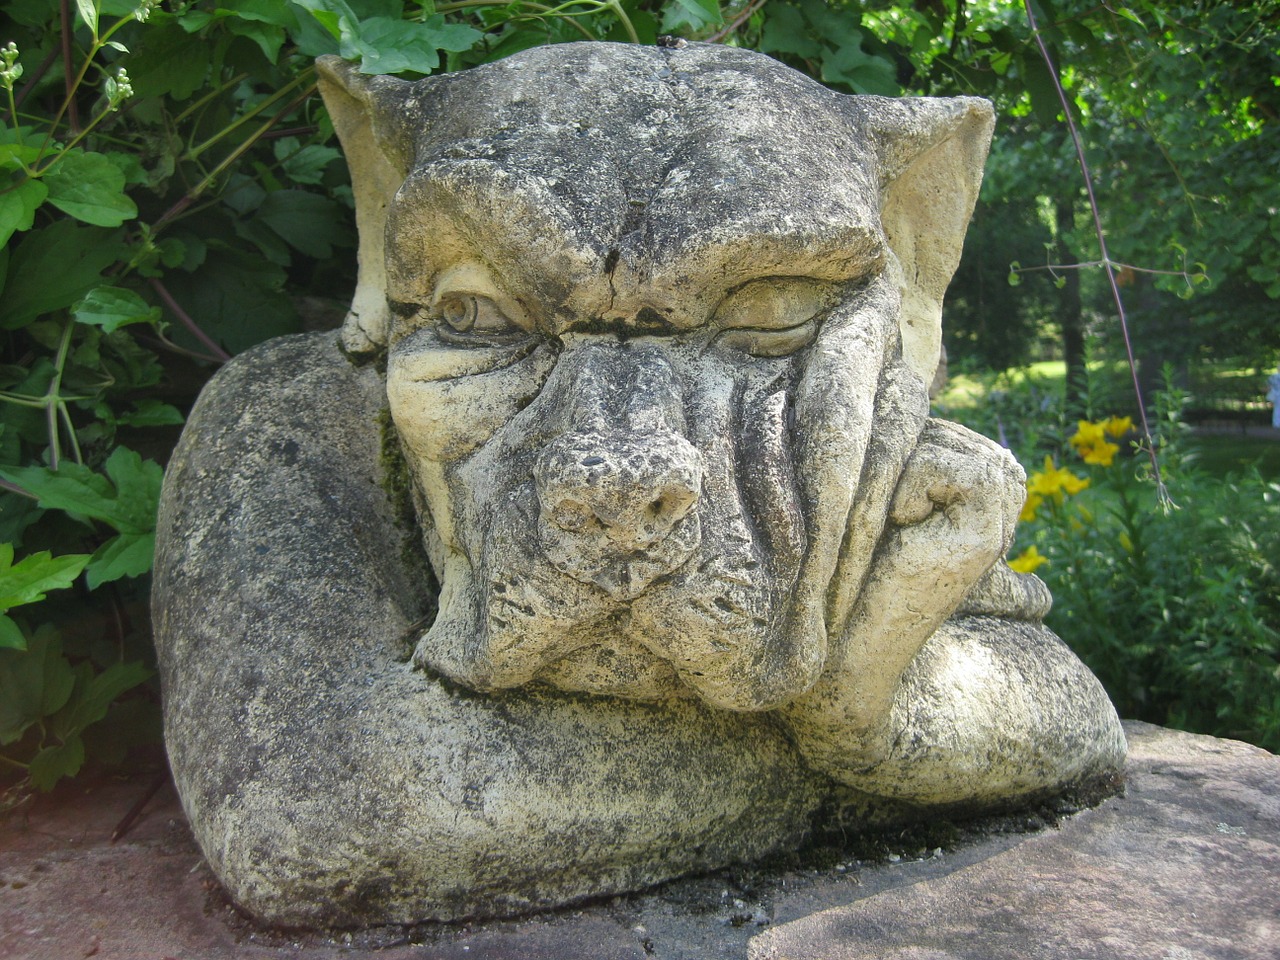 nettle-creek-stone-figure